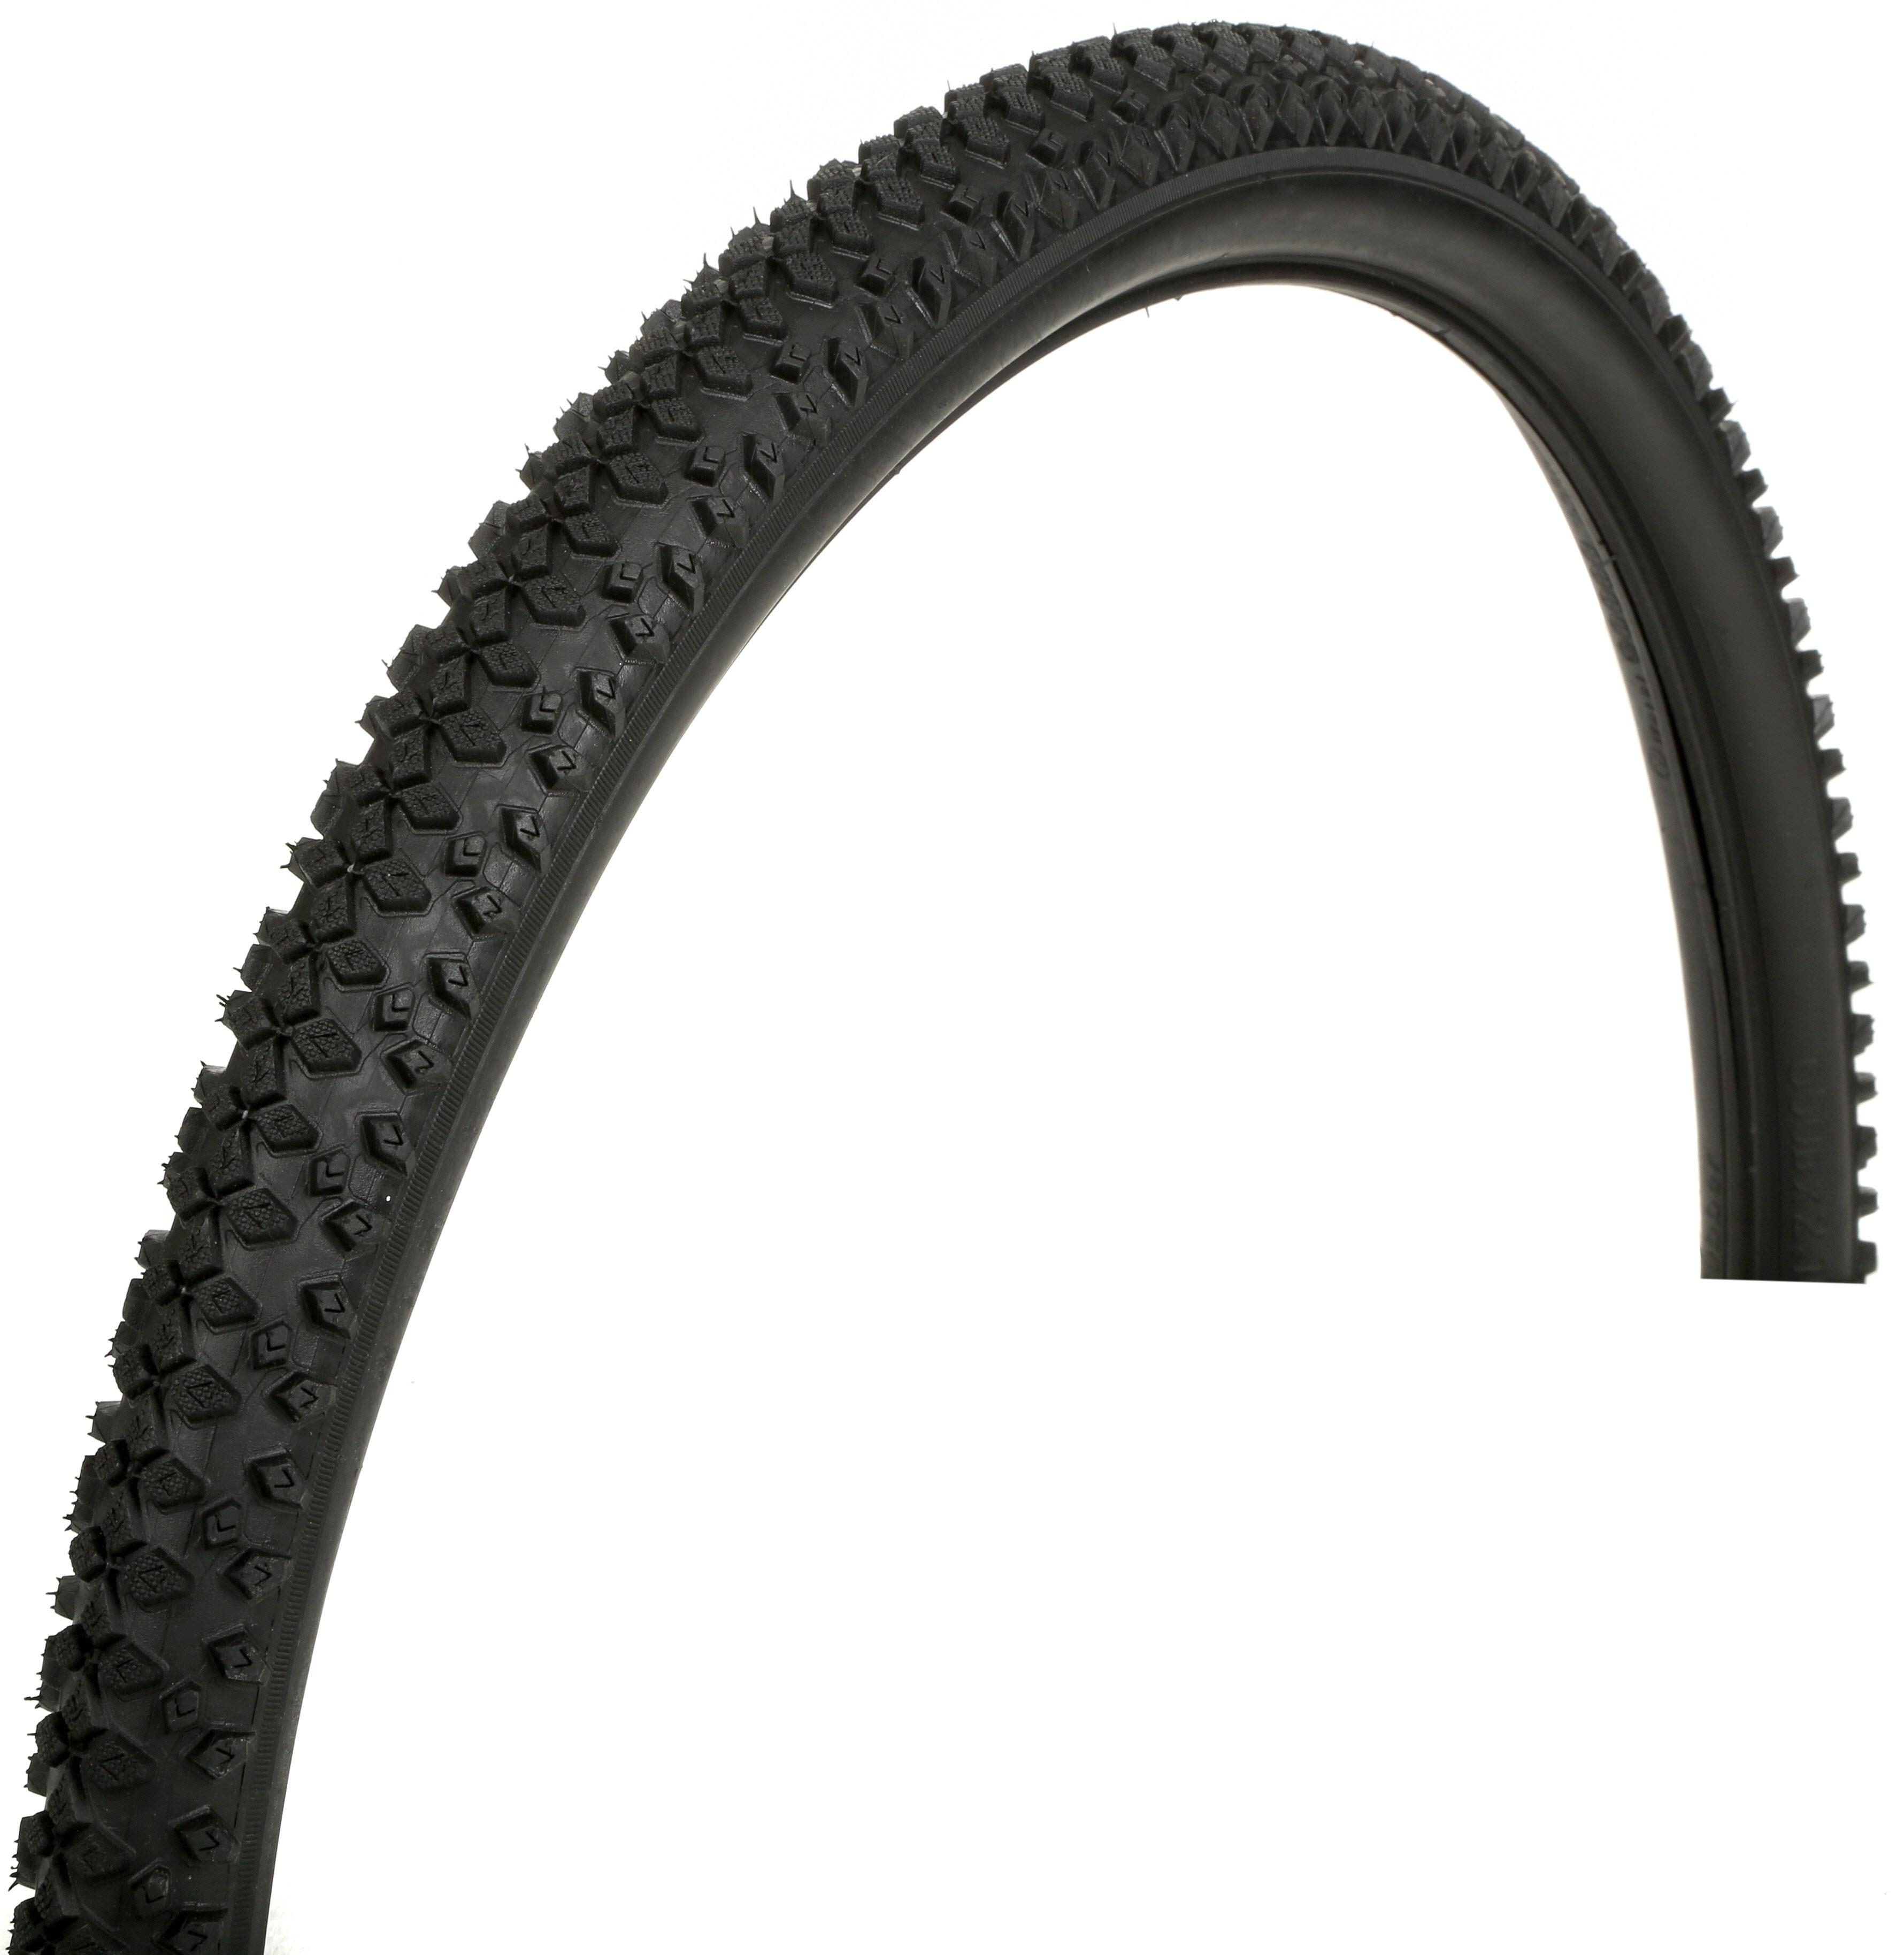 27.5 mountain bike tyres